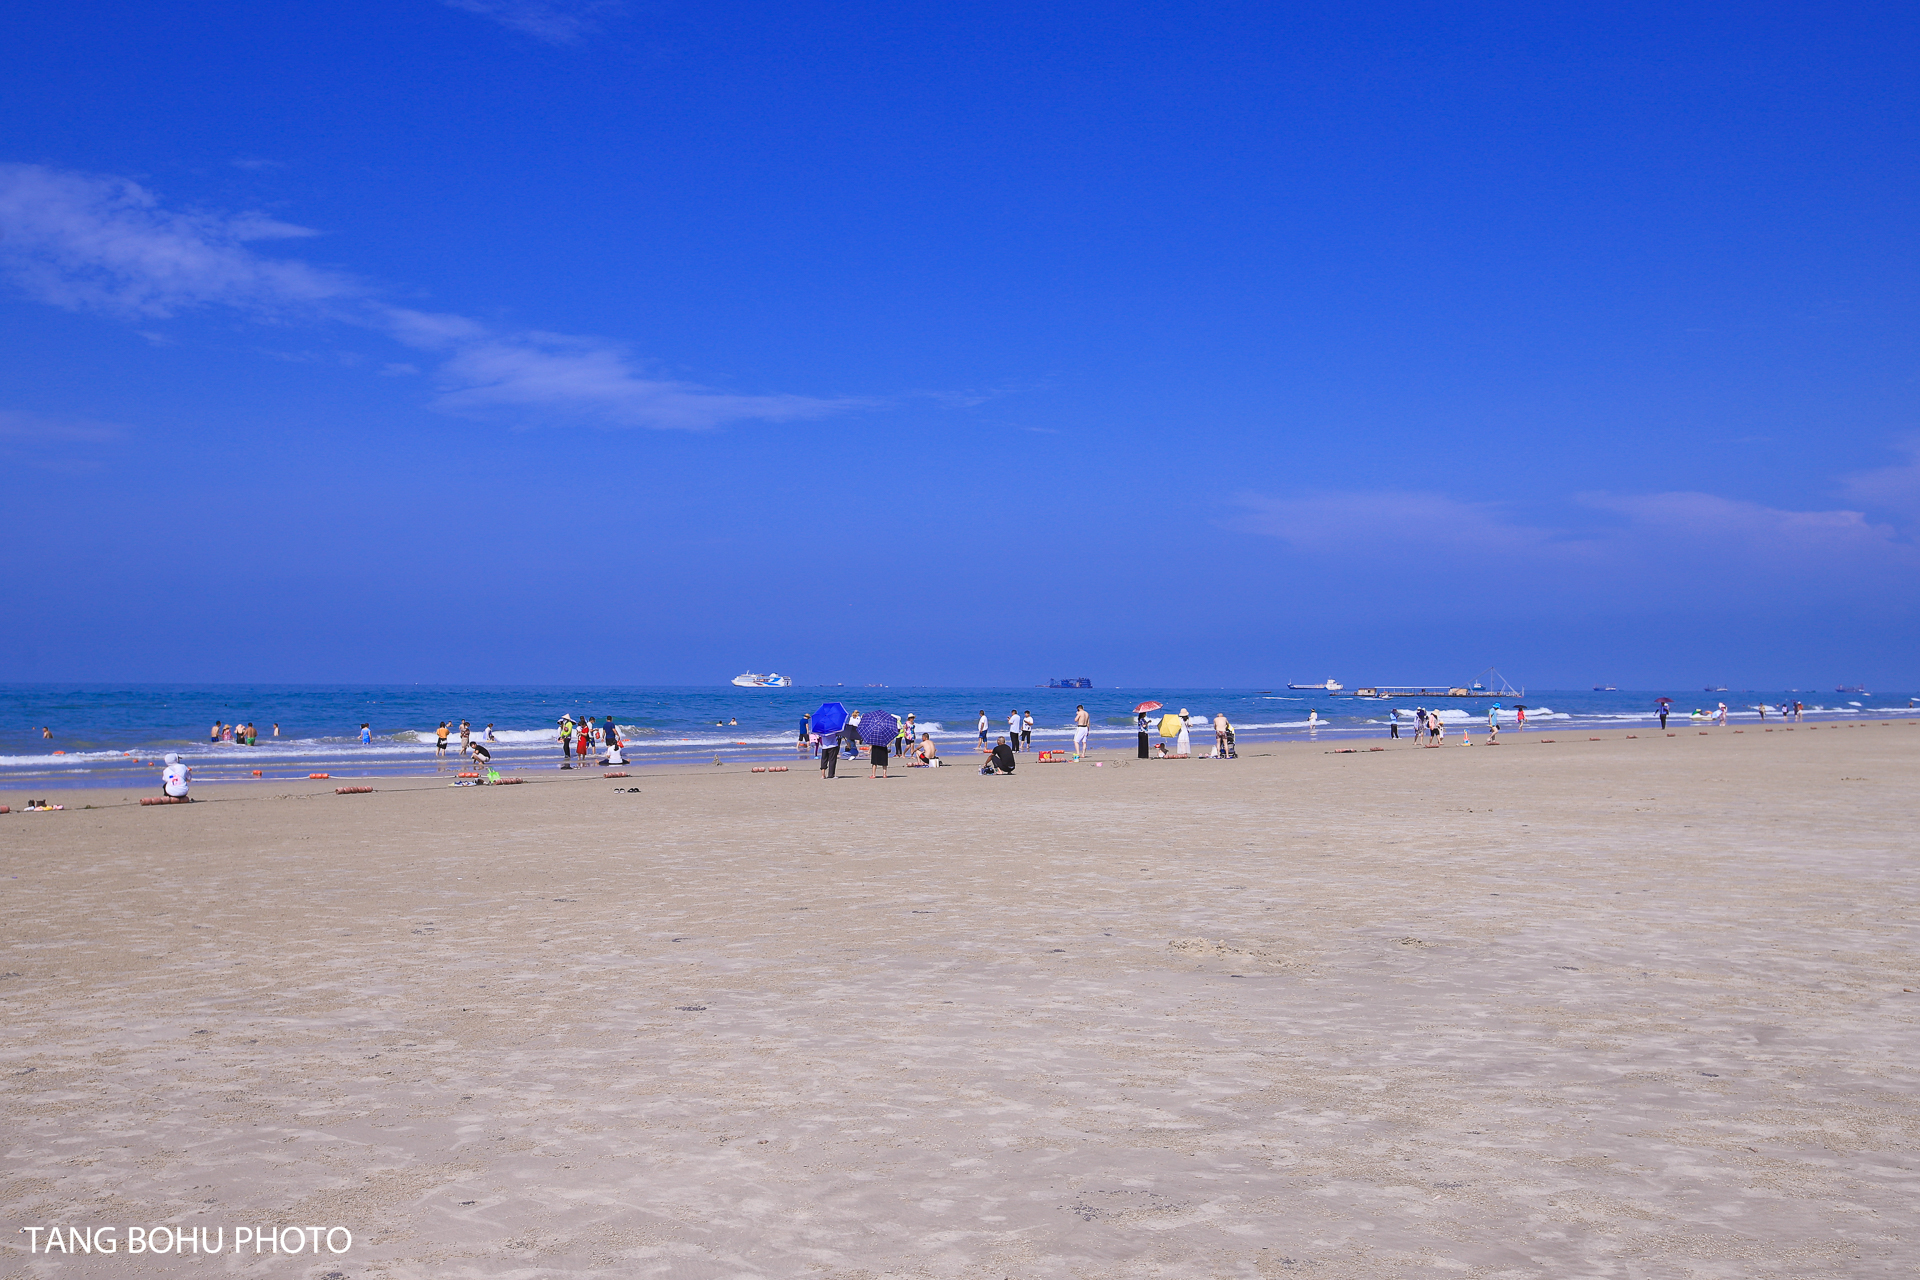 夏天的北海银滩蔚蓝大海,享受夏日里阳光沙滩,被称为天下第一滩